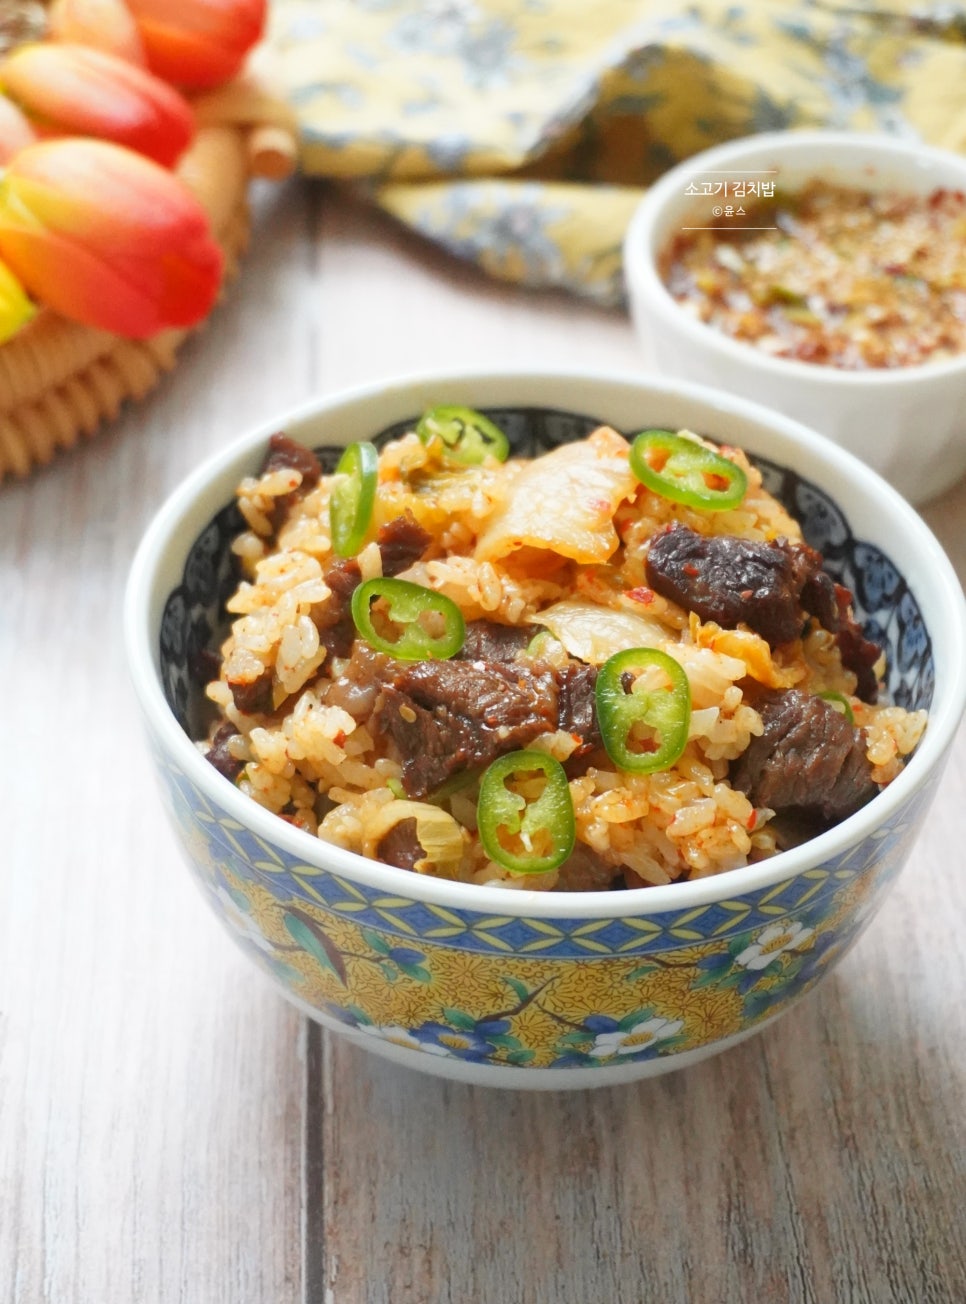 간장양념장 맛있게 김치밥 만드는 법 김치 소고기 솥밥 레시피